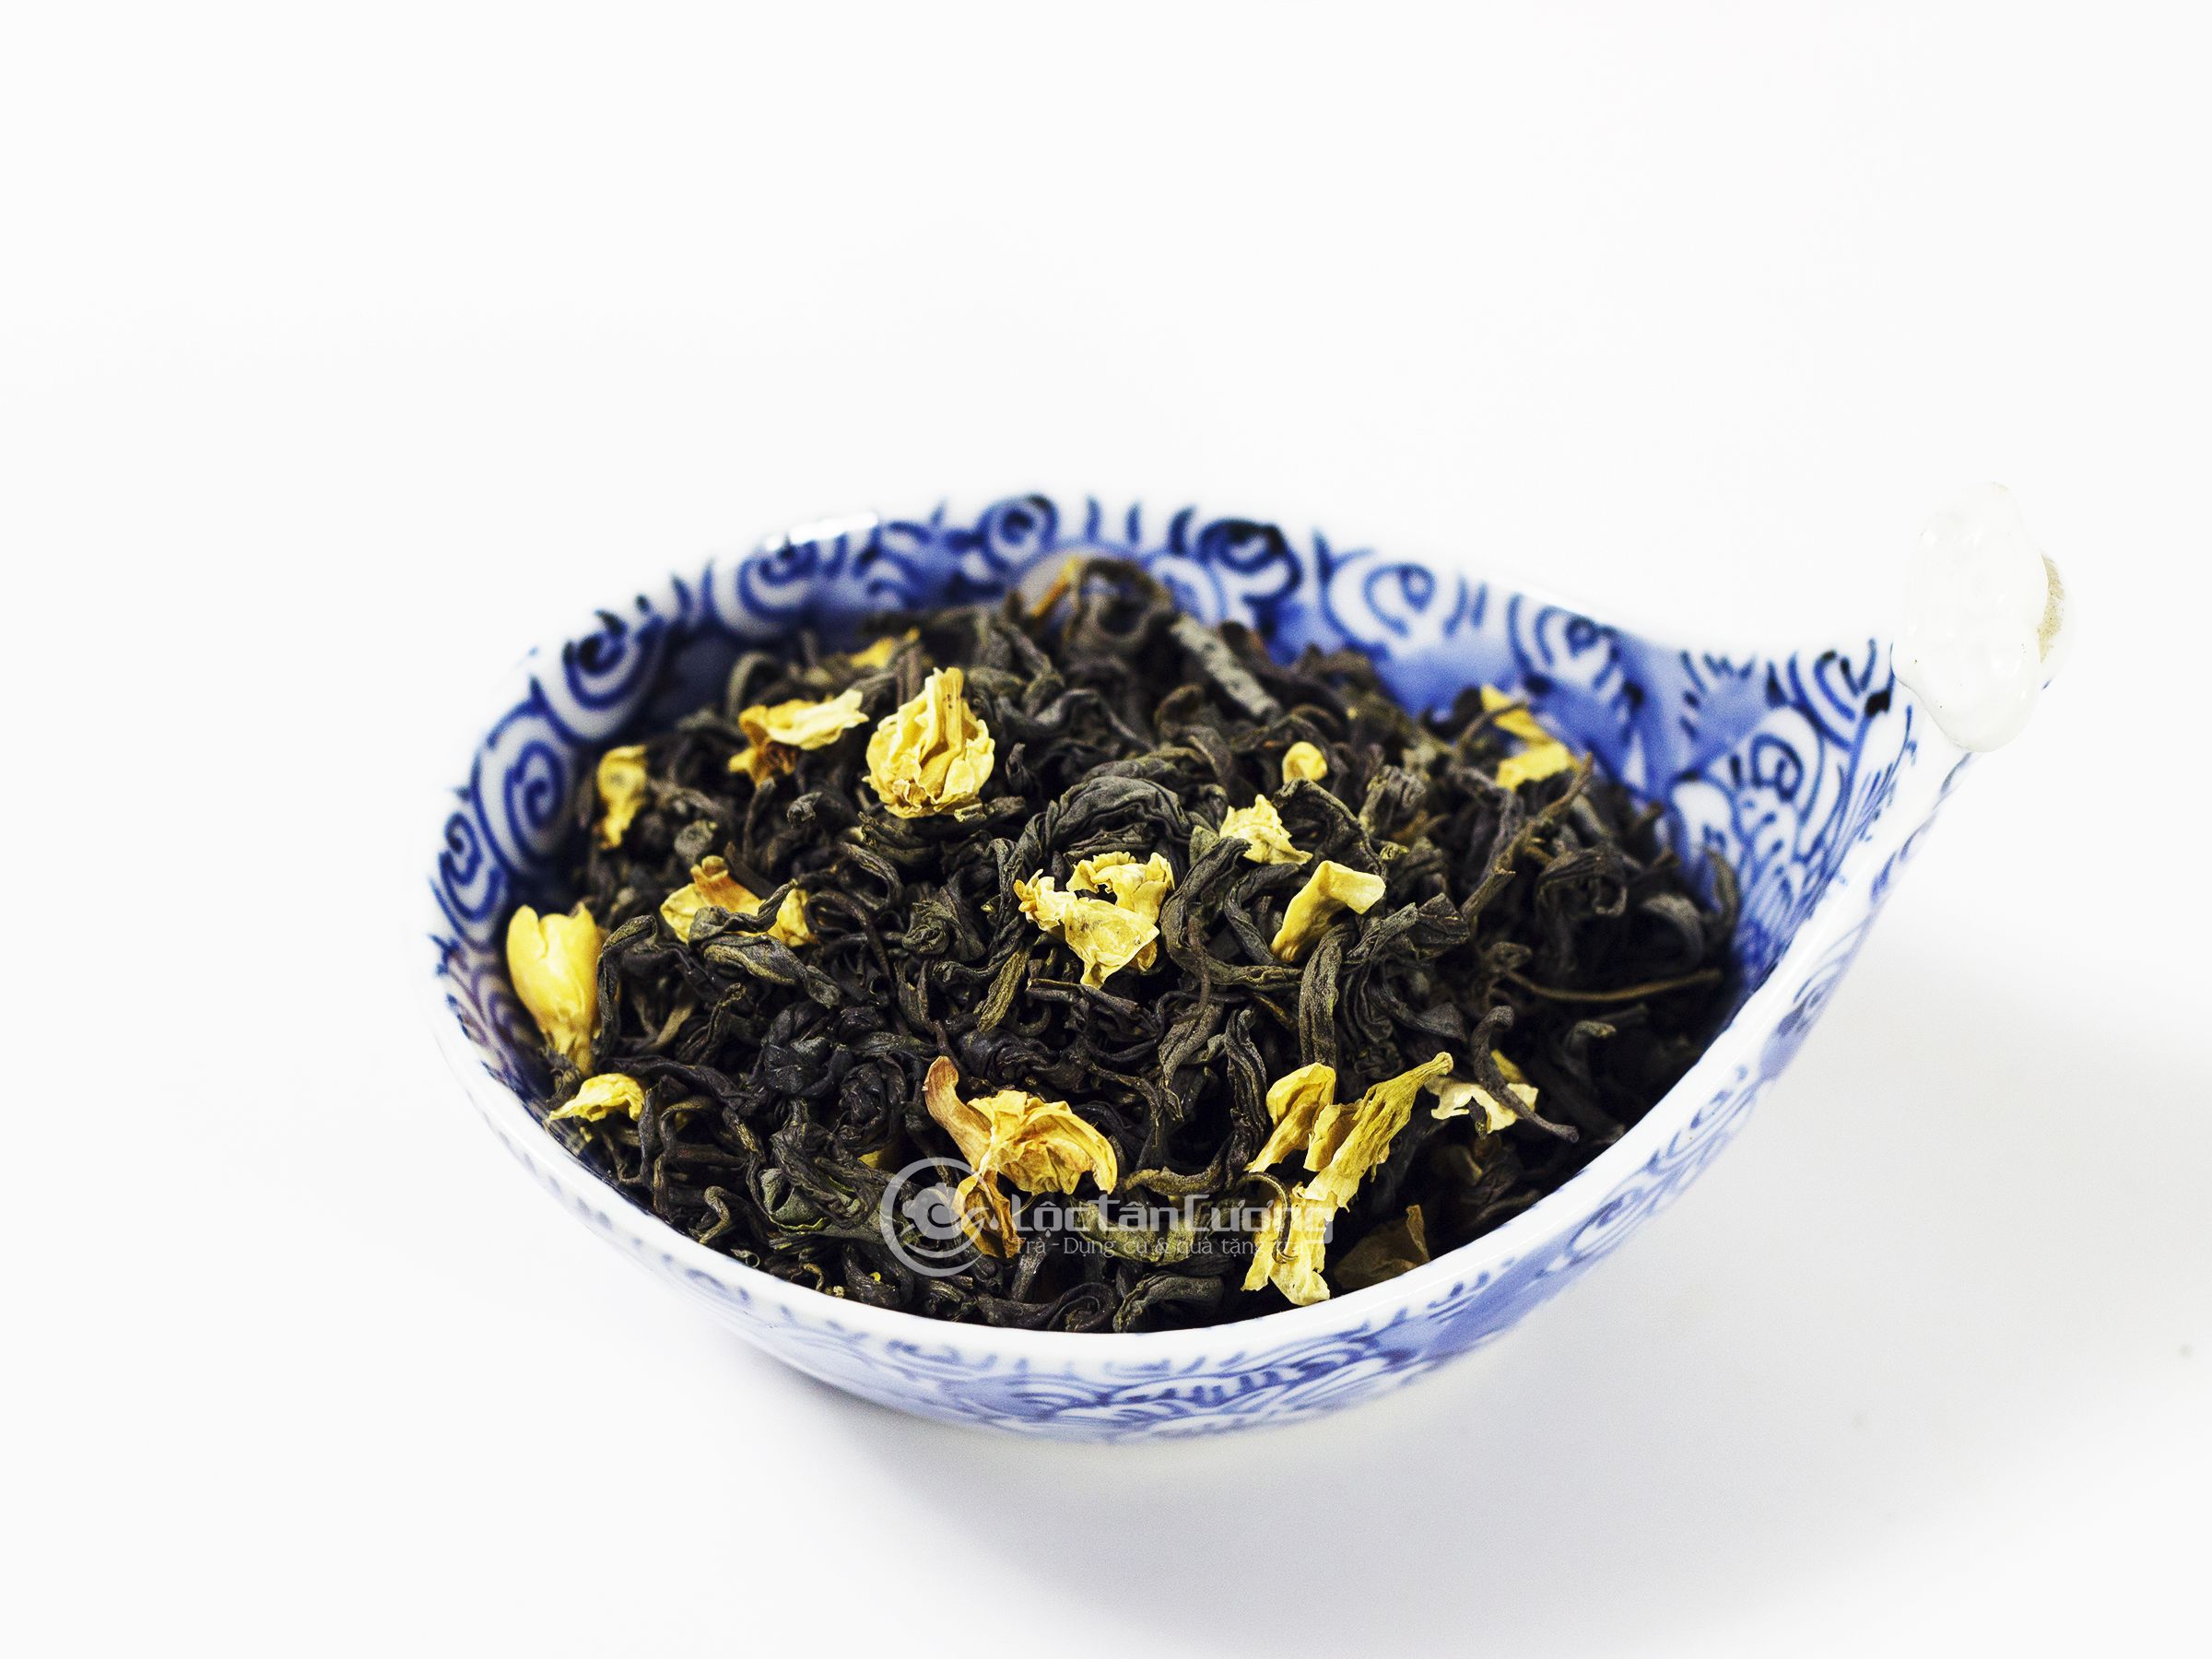 Cánh trà ướp hoa lài tự nhiên sau khi sản xuất